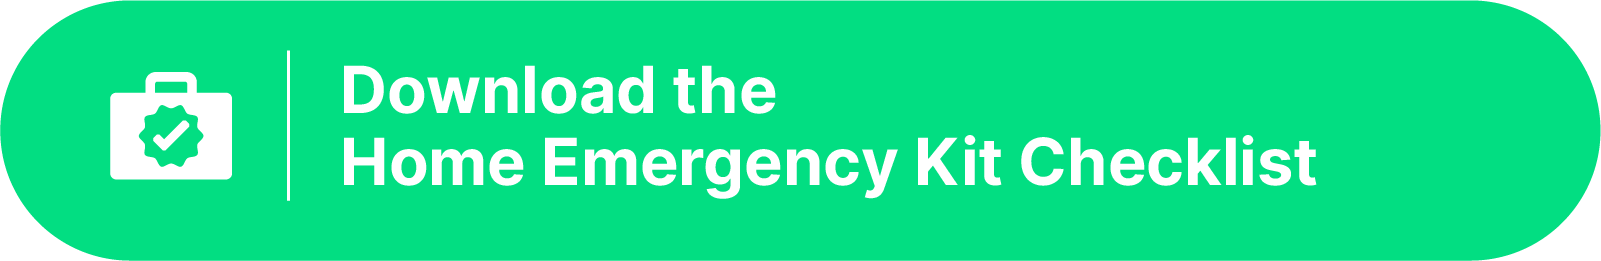 emergency kit checklist button